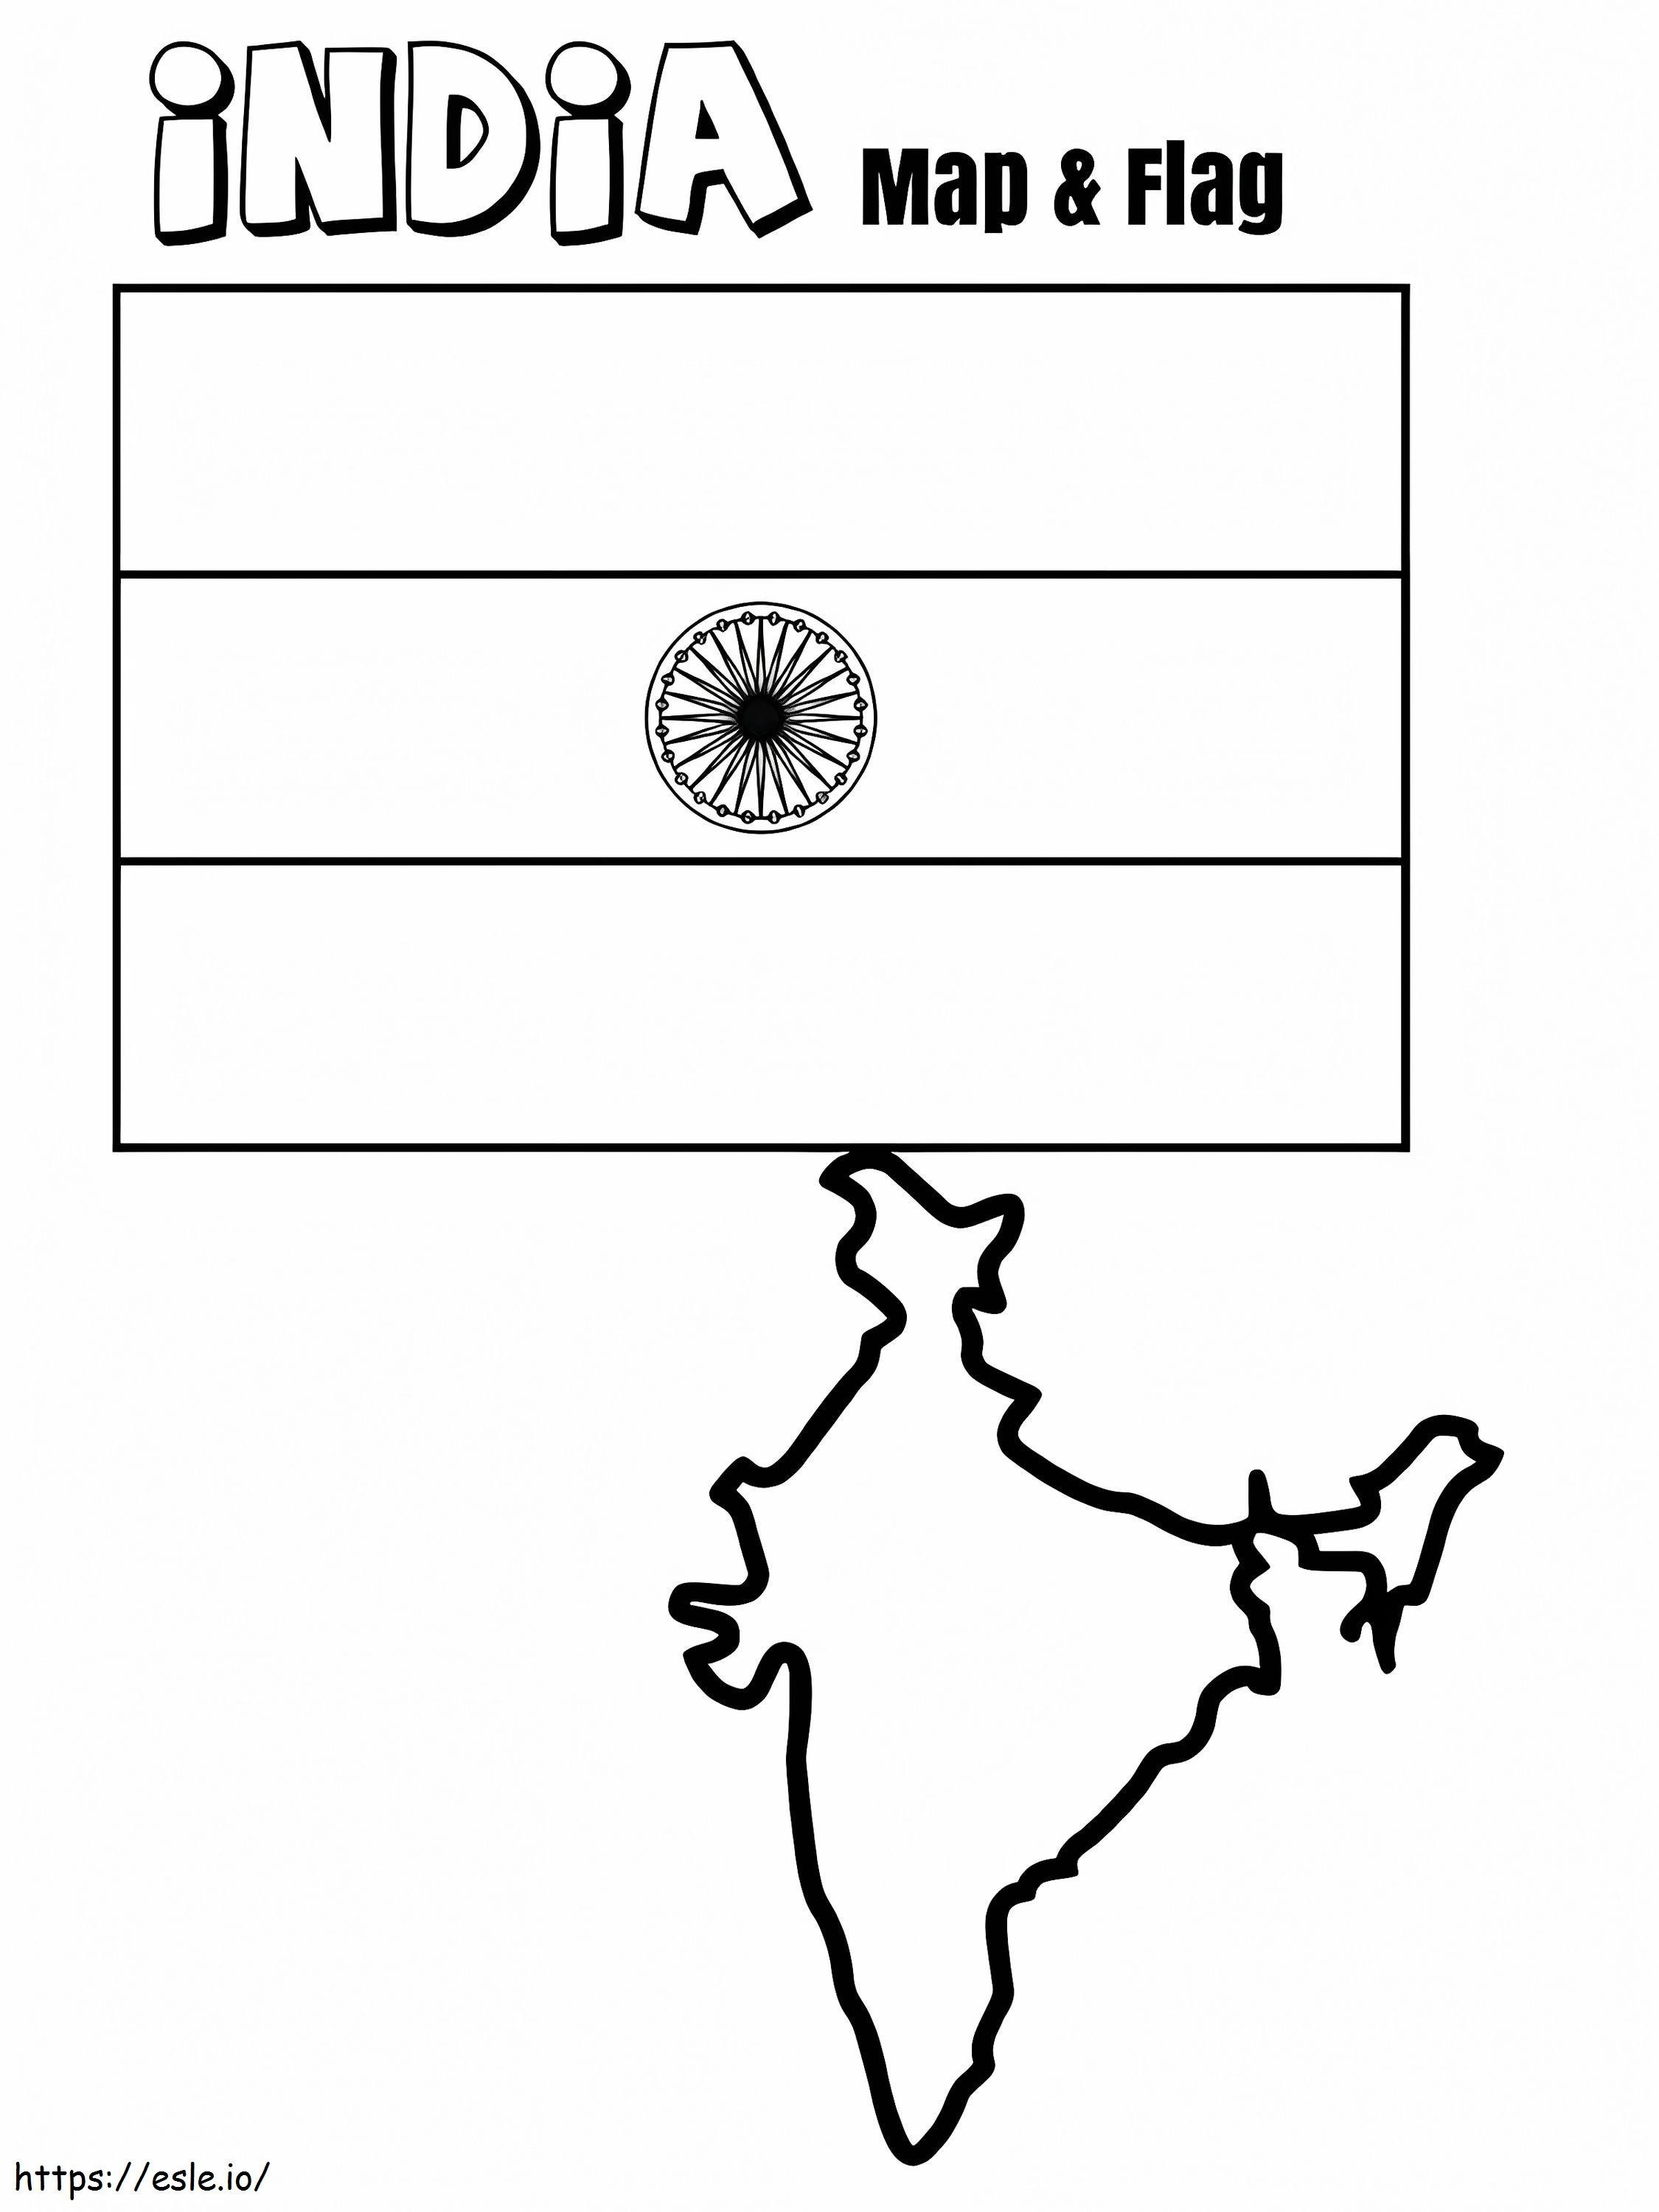 Bandera y mapa de la India para colorear